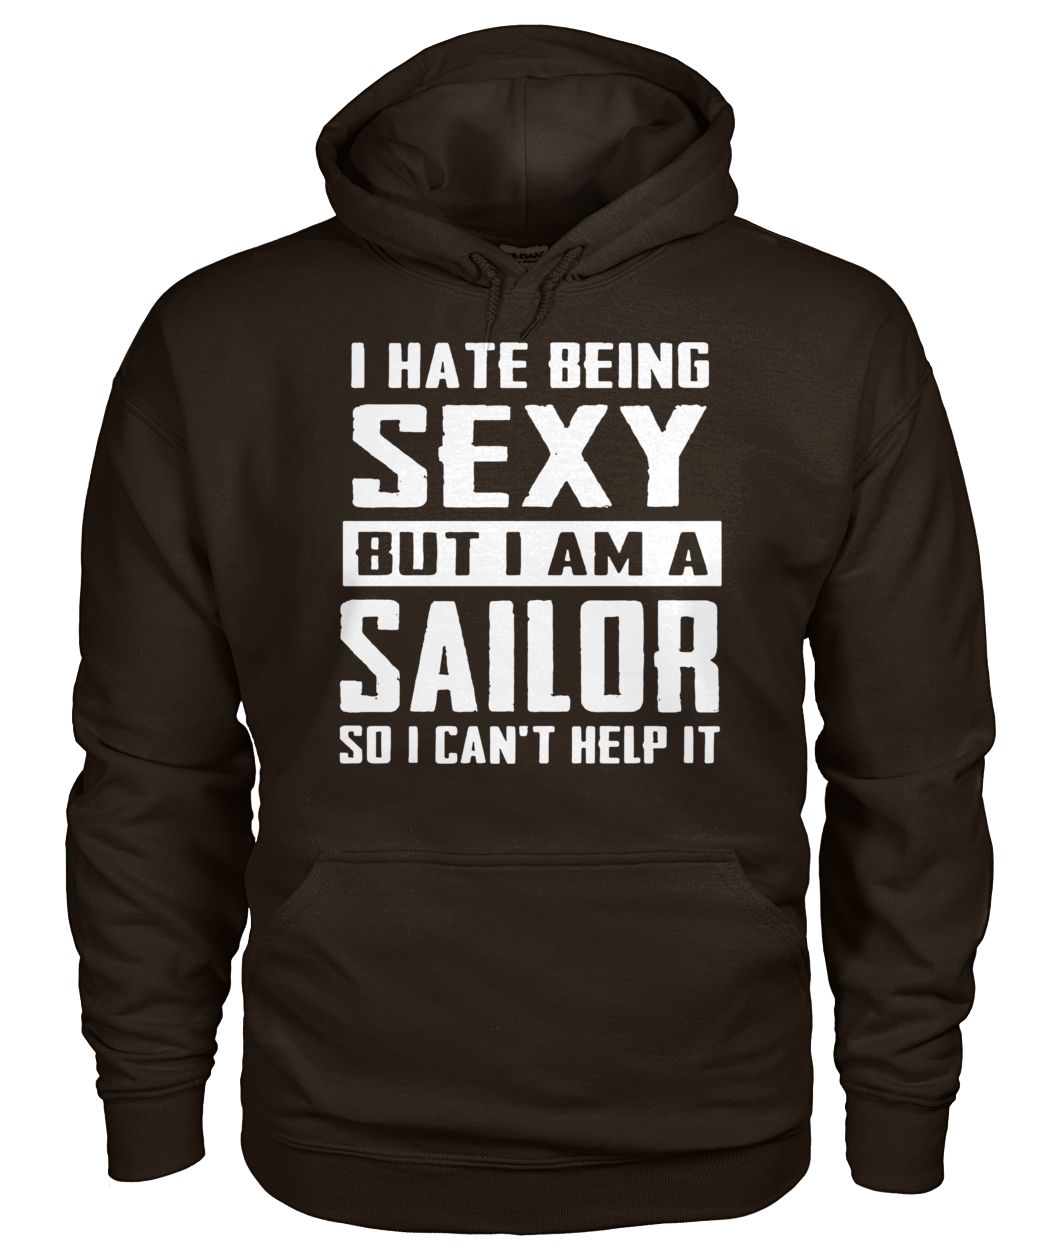 I hate being sexy out I am a sailor so I can't help it gildan hoodie